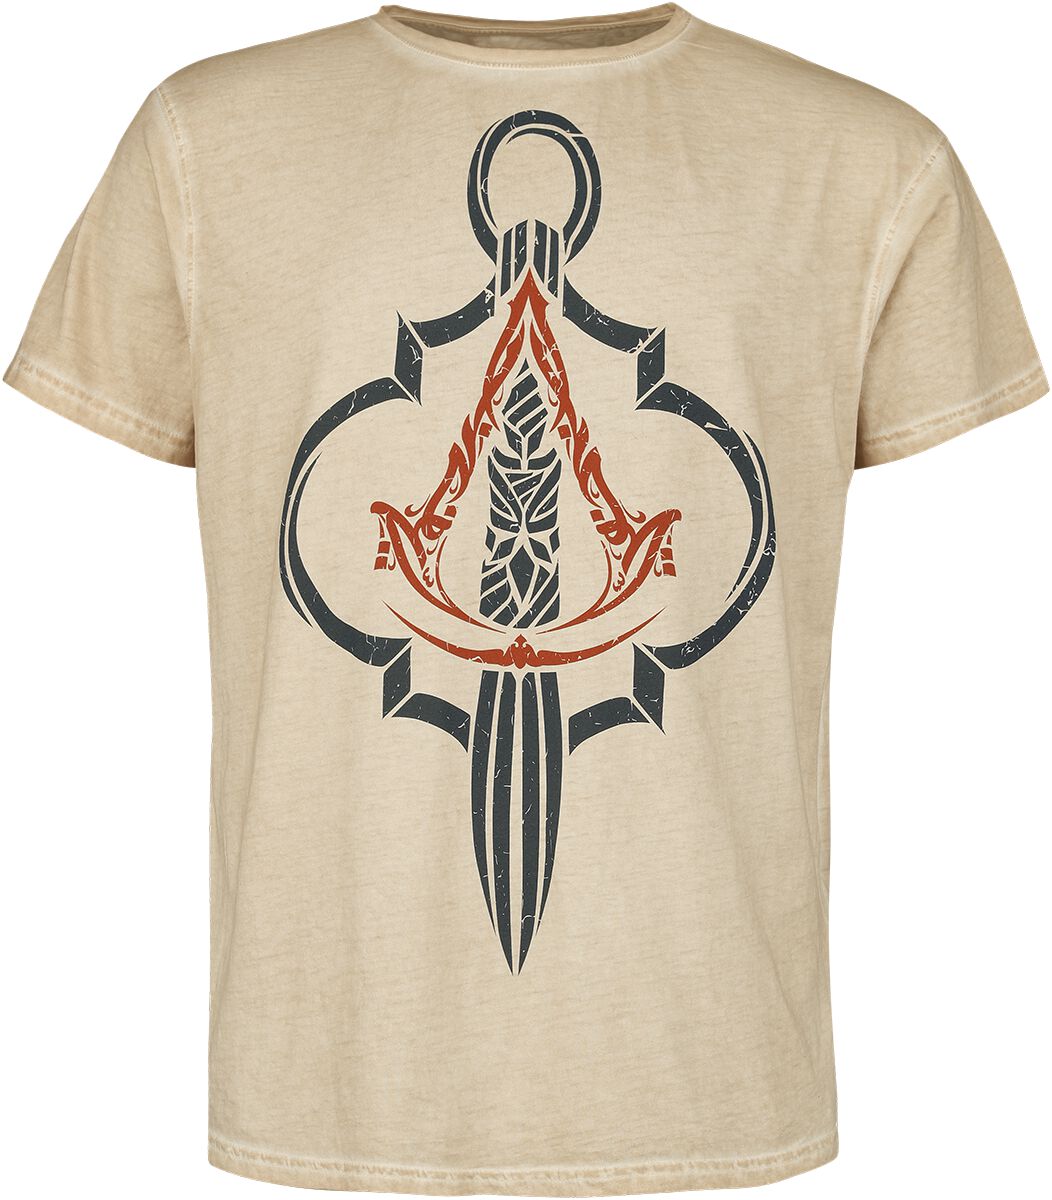 Assassin`s Creed - Gaming T-Shirt - Mirage - Crest - S bis XXL - für Männer - Größe L - beige  - EMP exklusives Merchandise!